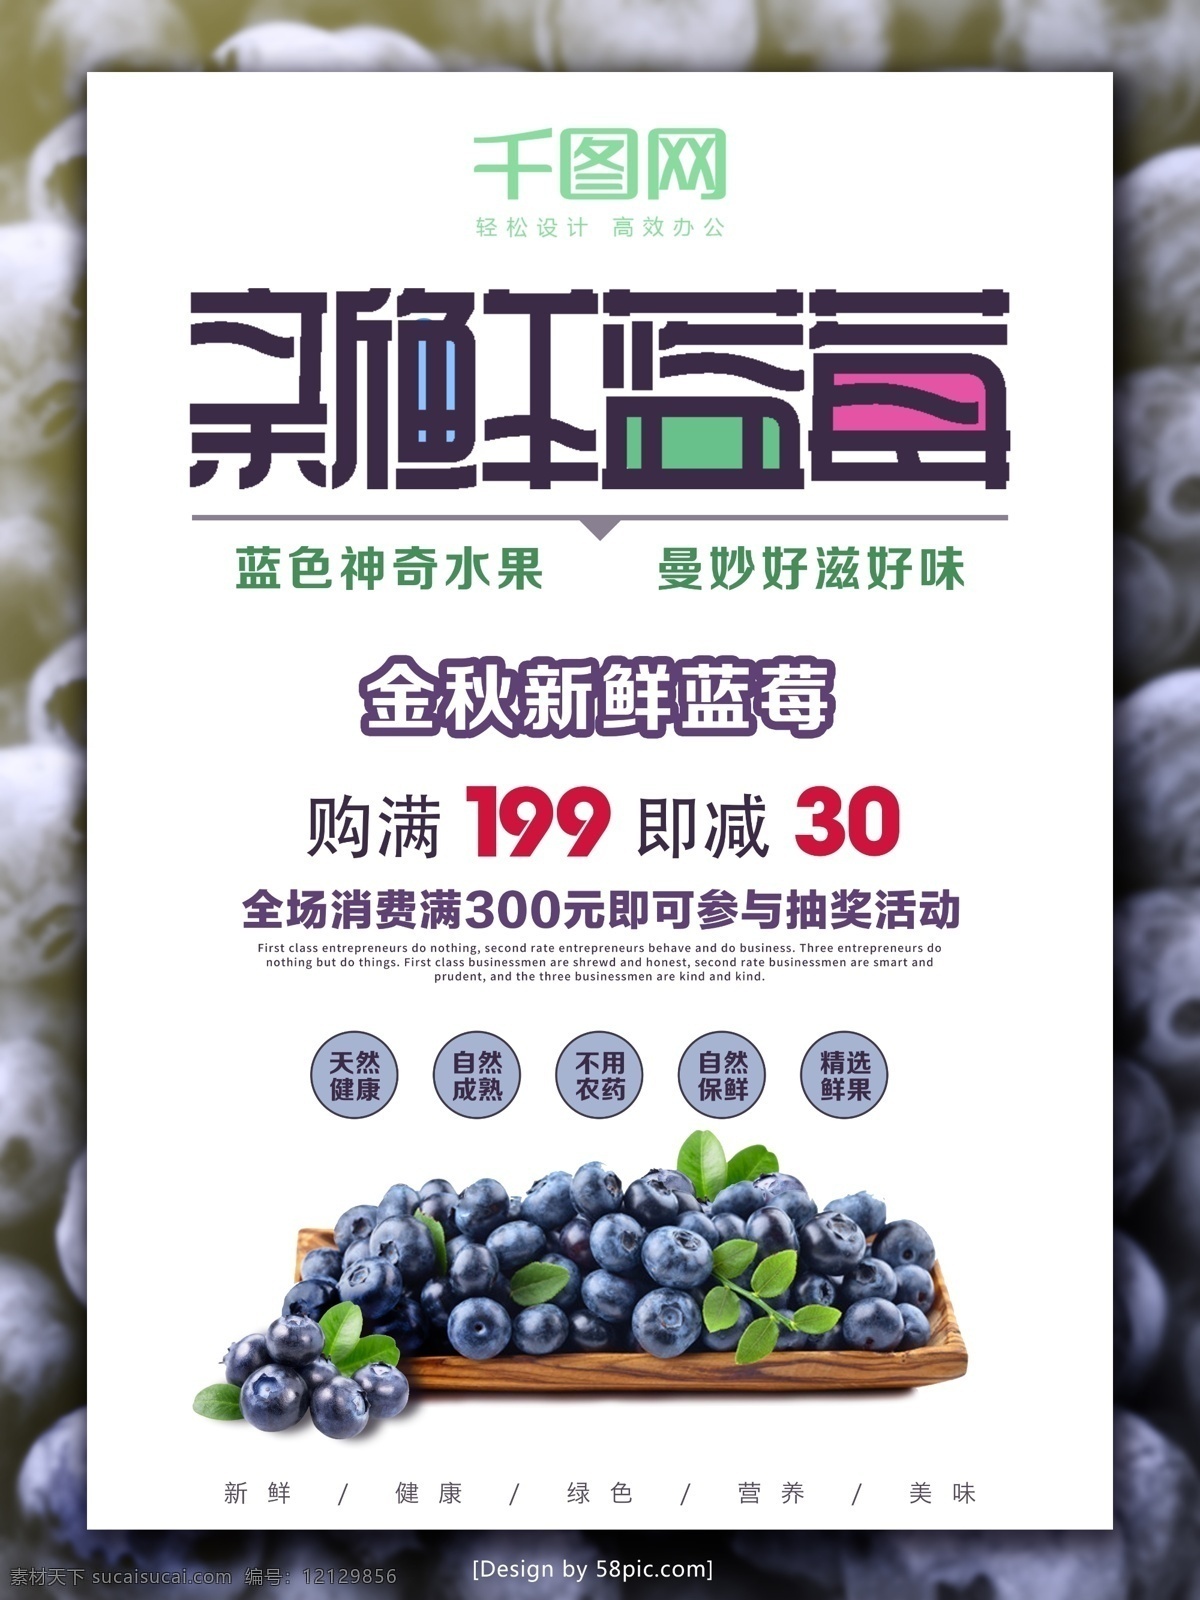 蓝莓 新鲜 上市 海报 蓝莓新鲜上市 蓝莓海报 蓝莓广告 蓝莓促销广告 店长推荐 水果海报